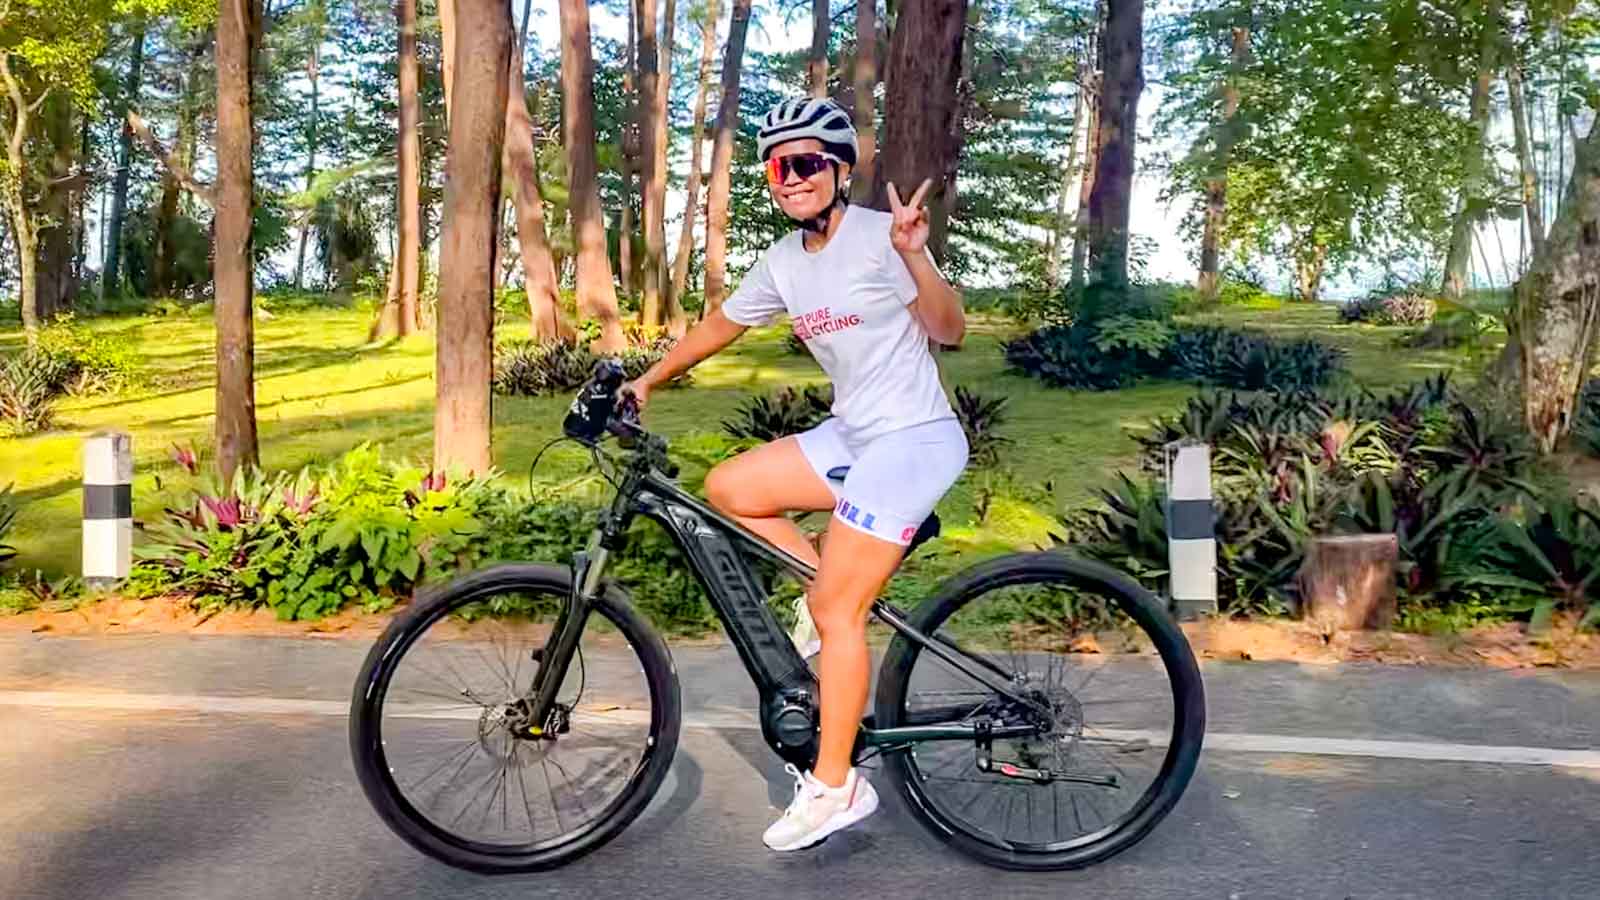 Thai cyclist riding e-bike through Sririnat National Park and waving to camera